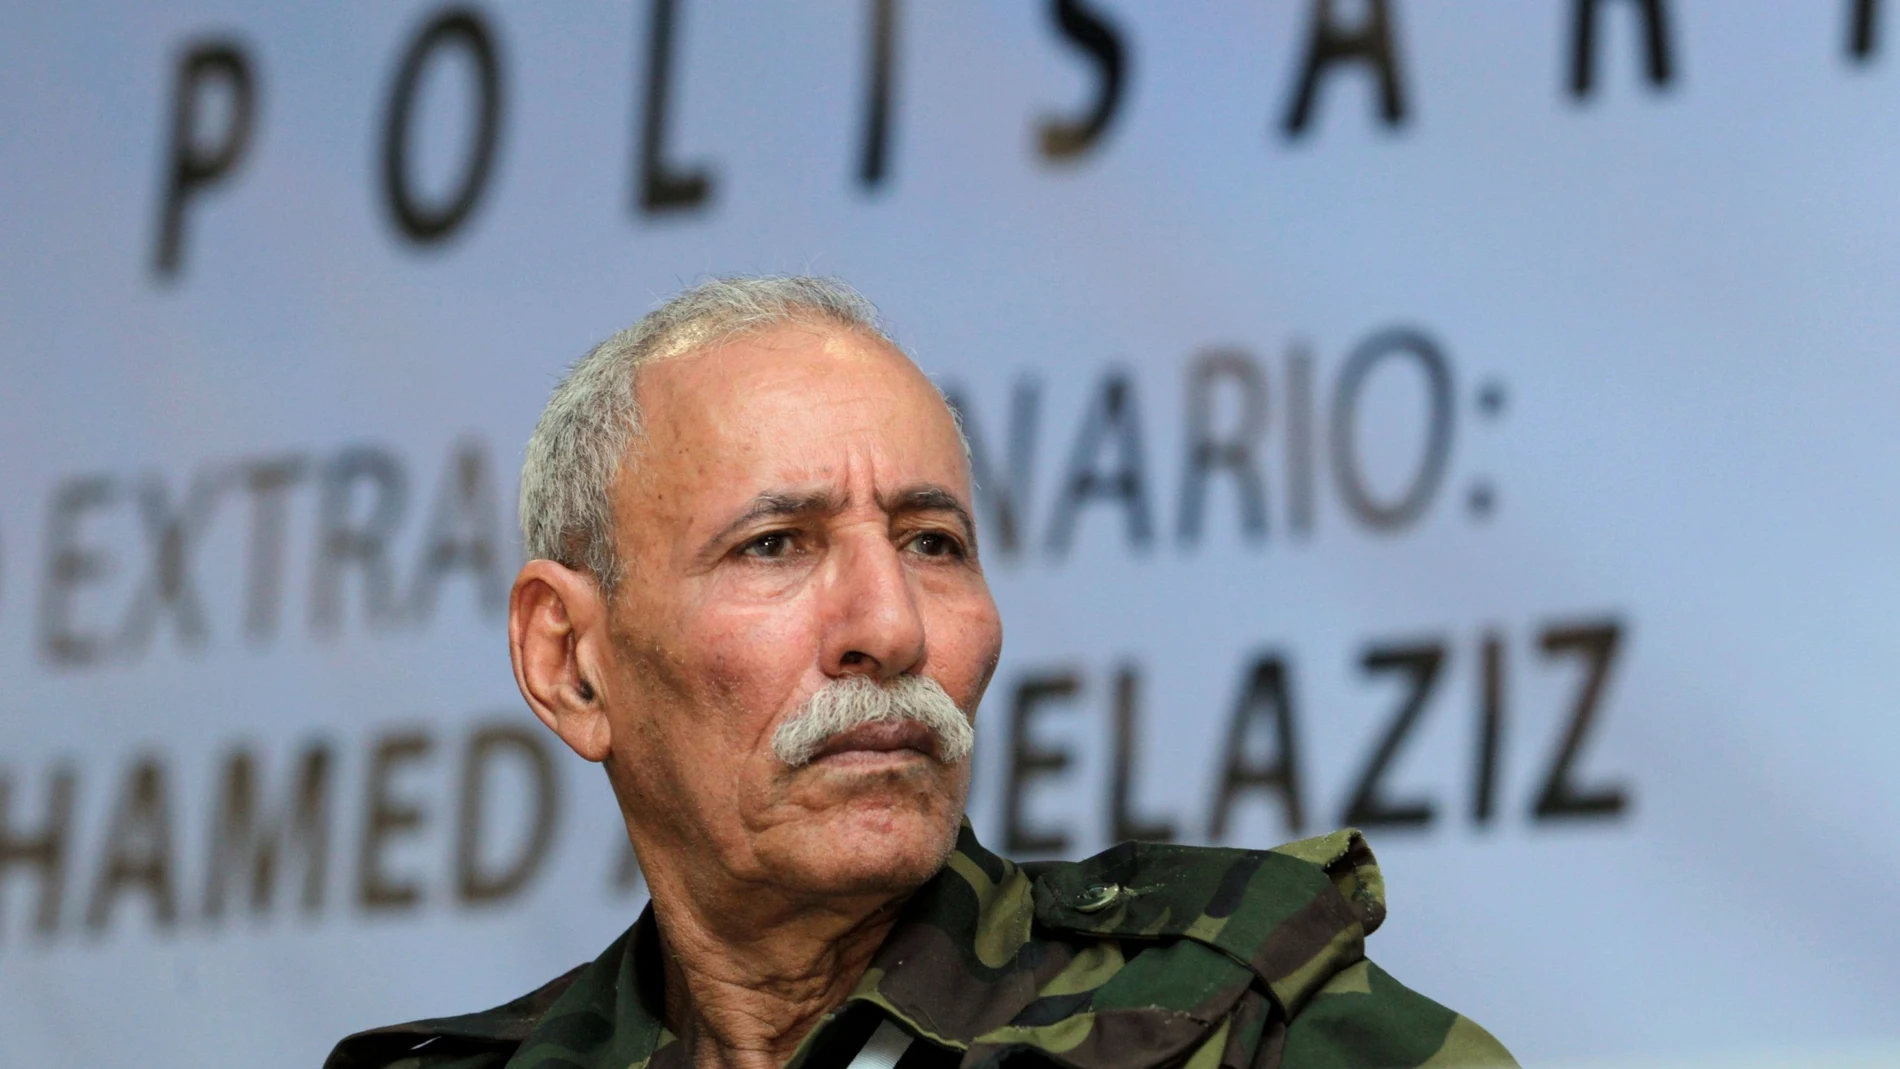 El líder del Frente Polisario. Brahim Ghali, estuvo ingresado en un hospital de Logroño desde el 18 de abril al 1 de junio del pasado año